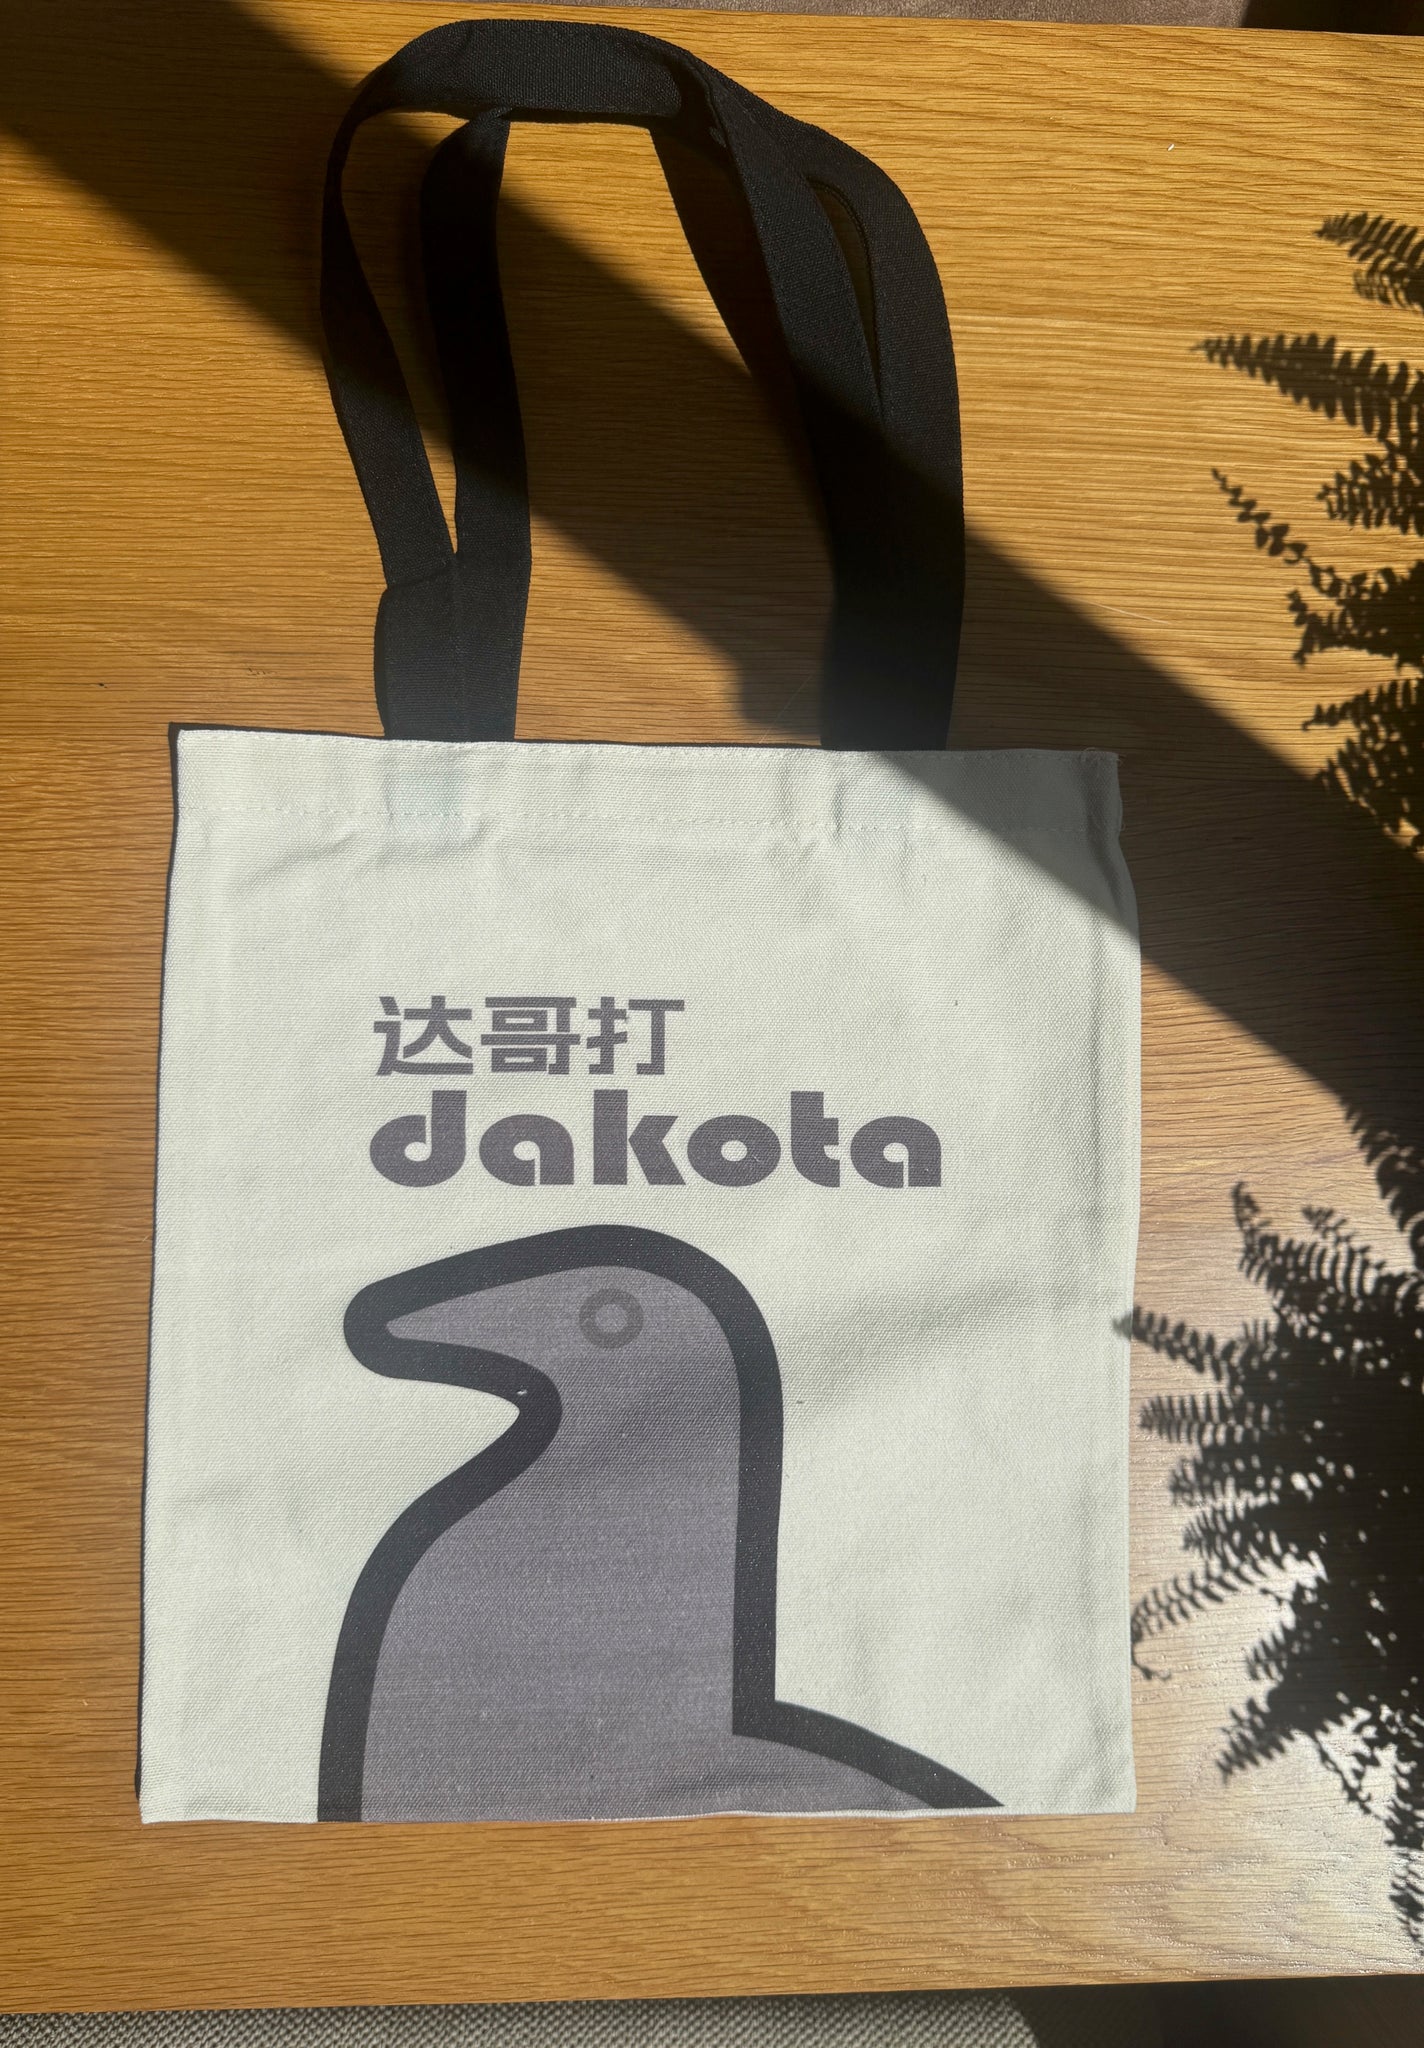 Dakota 盒装 + 限量托特包（tote bag） / 黄凯德